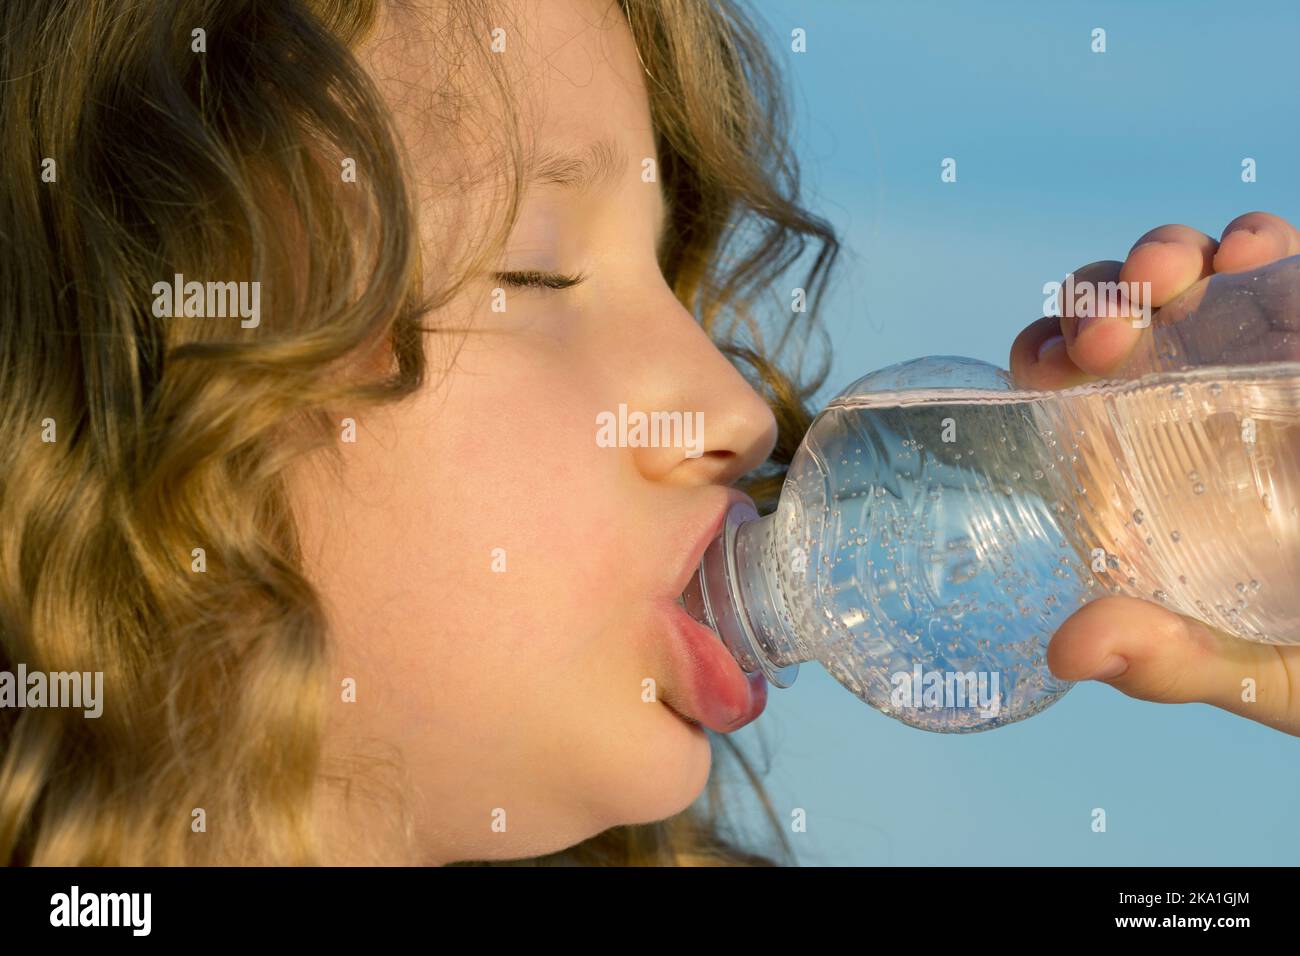 Une fille boit de l'eau minérale dans une bouteille pour animaux Banque D'Images